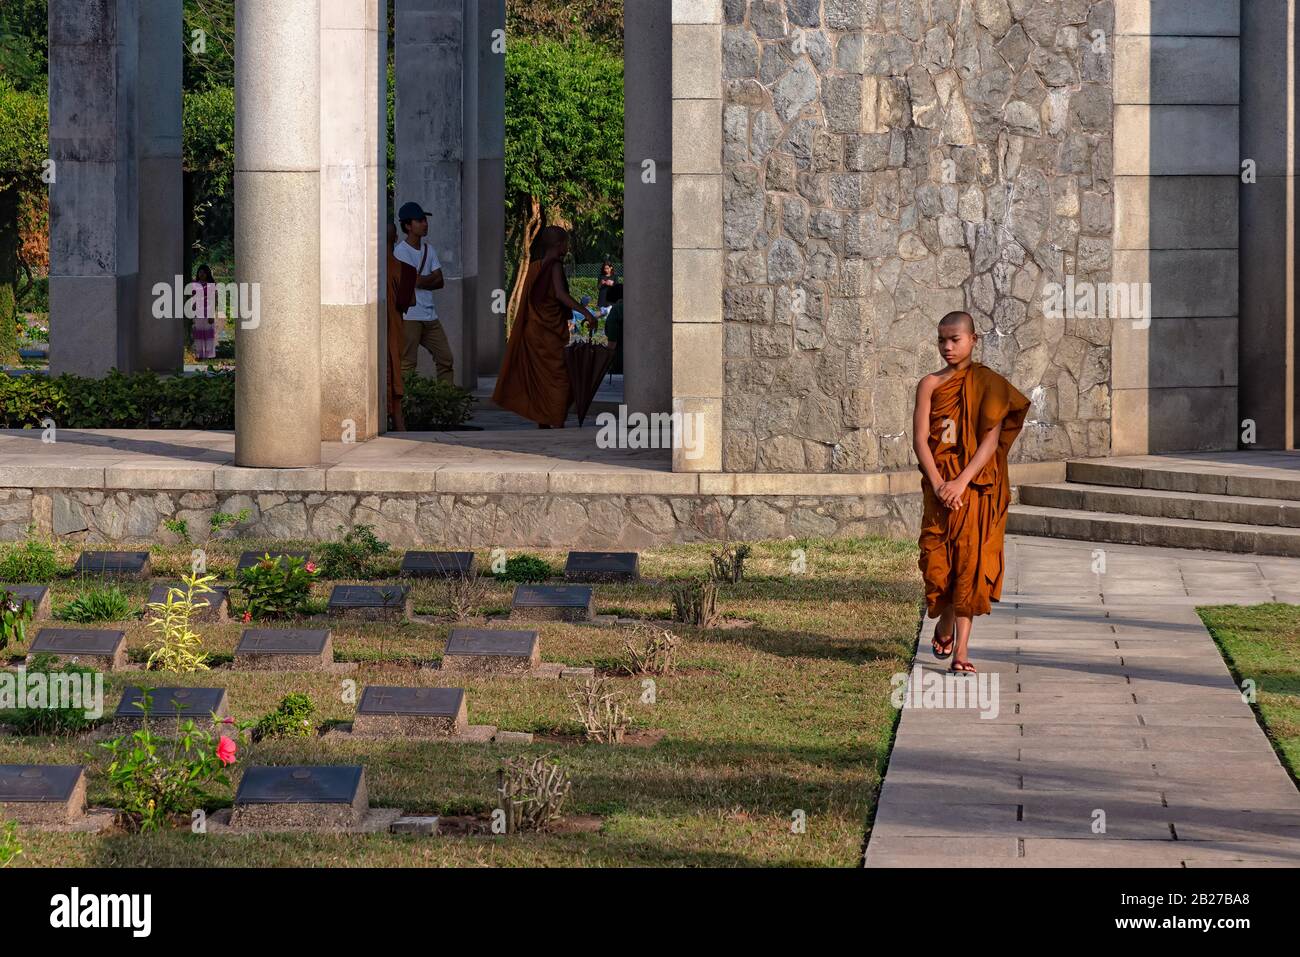 Taukkyan, Myanmar - 30 décembre 2019: Un moine marchant dans le cimetière de guerre de Taukkyan. C'est un cimetière pour les soldats alliés du Commonwealth britannique Banque D'Images